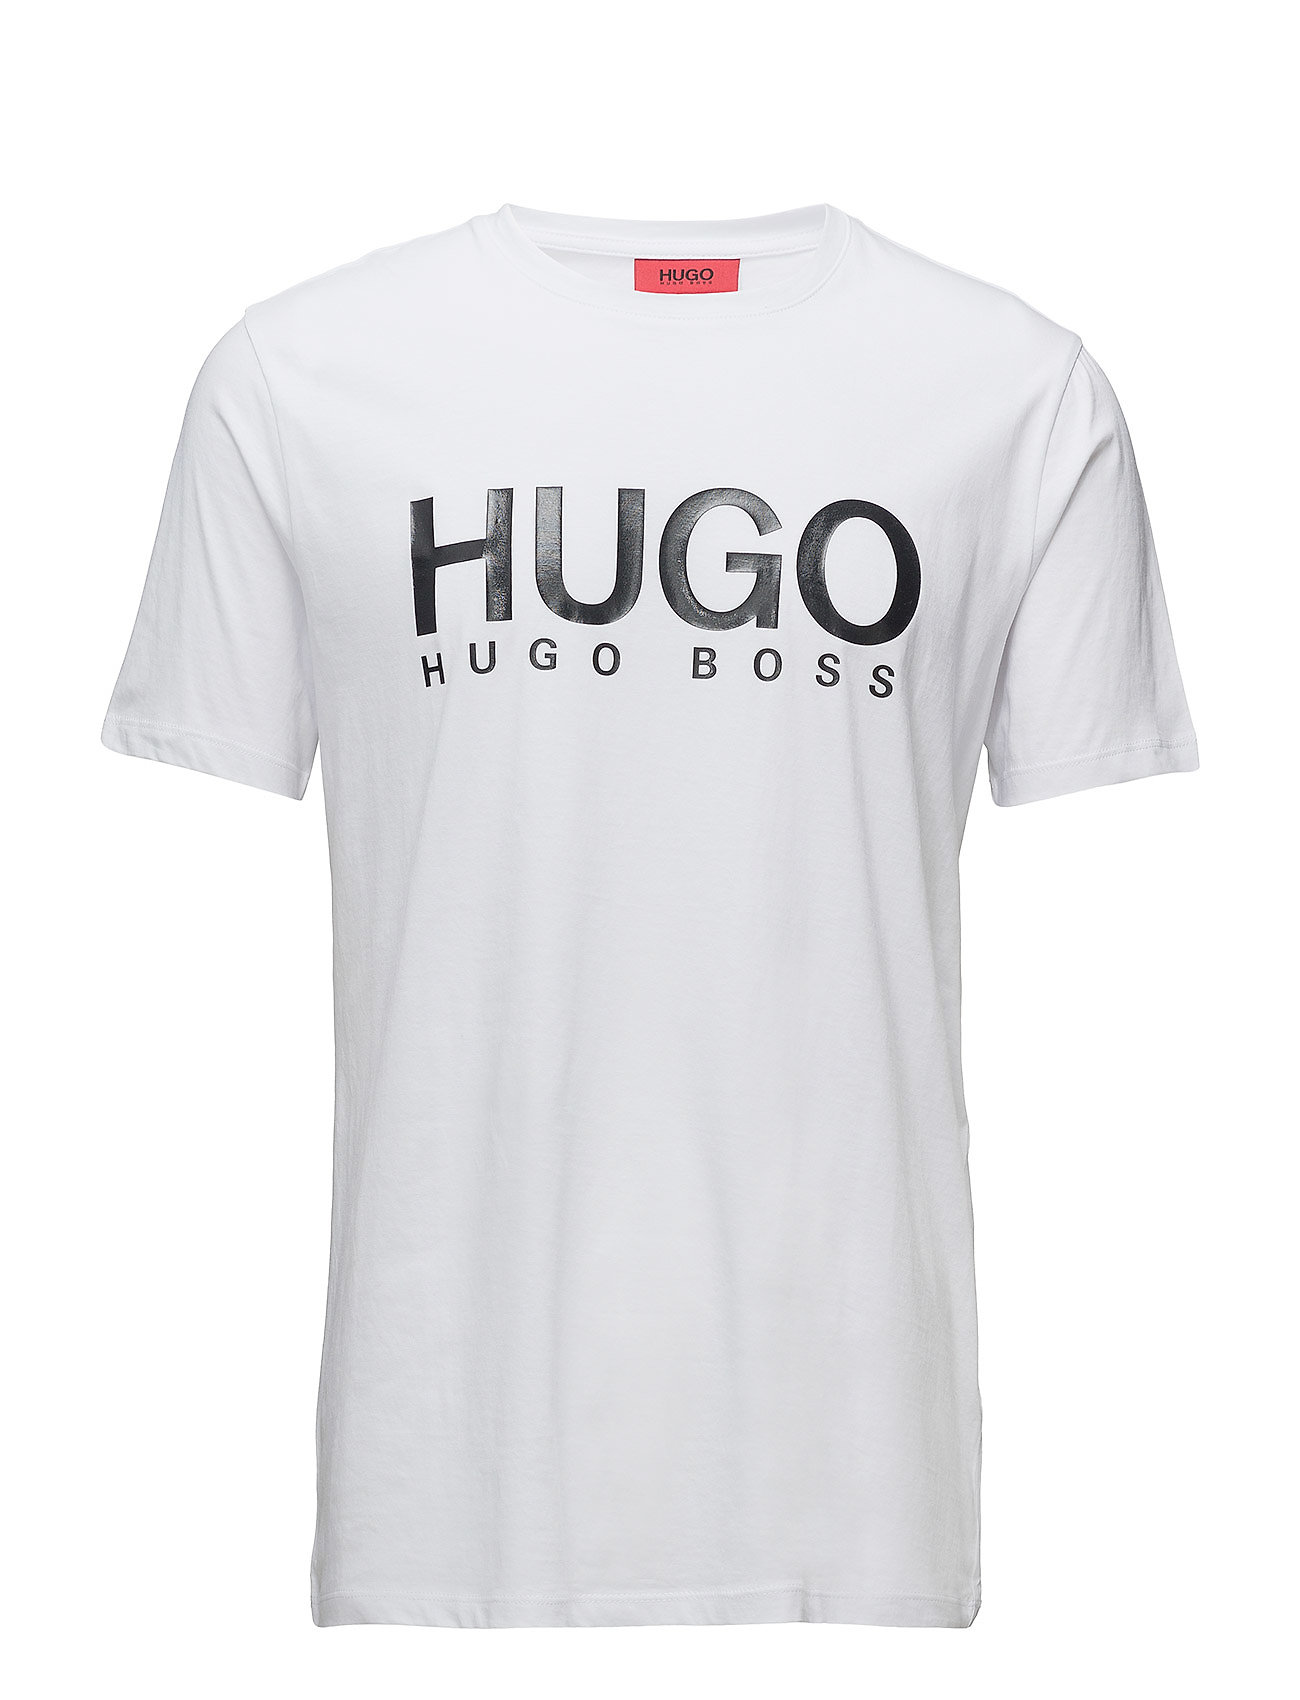 inaktive Thriller Bliv såret Dolive T-shirt Hvid HUGO kortærmede t-shirts fra Hugo Boss til herre i Sort  - Pashion.dk